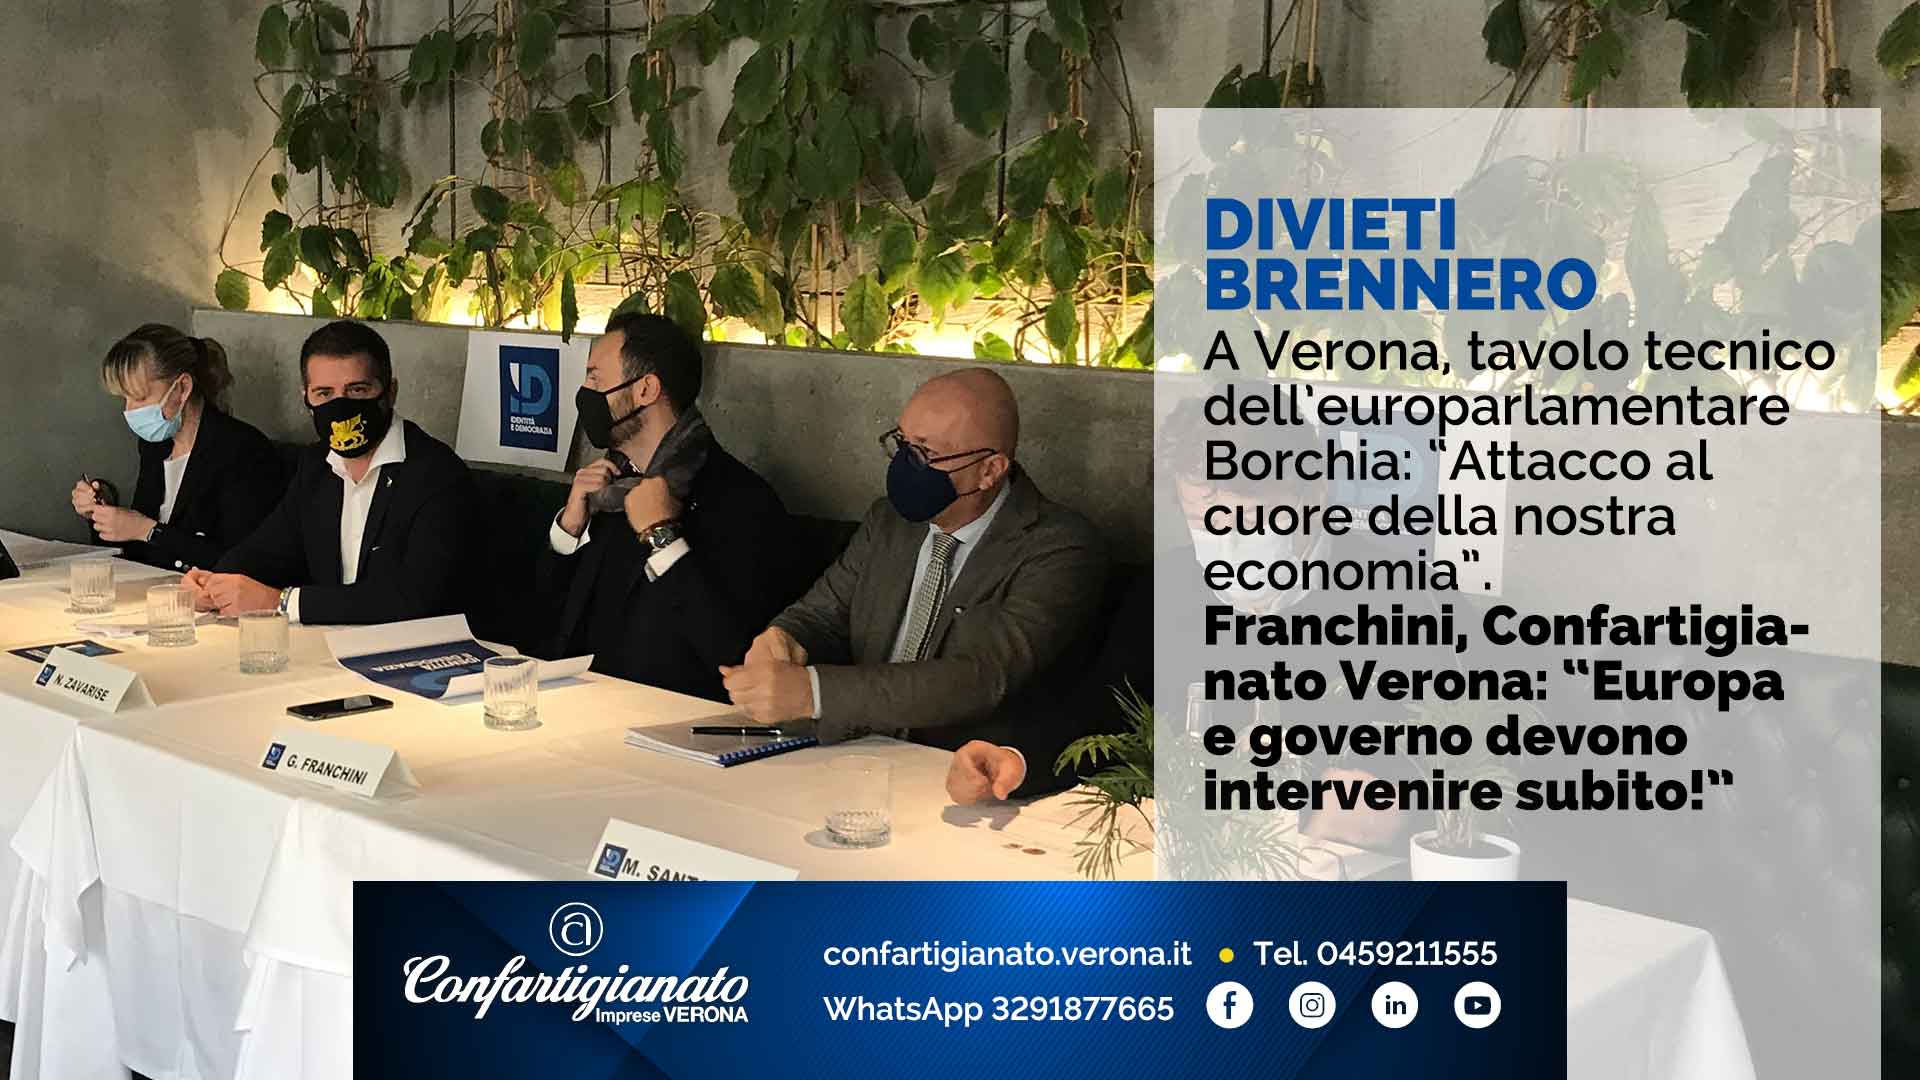 DIVIETI BRENNERO – A Verona, tavolo tecnico dell’europarlamentare Borchia: “Attacco al cuore della nostra economia”. Franchini, Confartigianato Verona: “Europa e governo devono intervenire subito!”